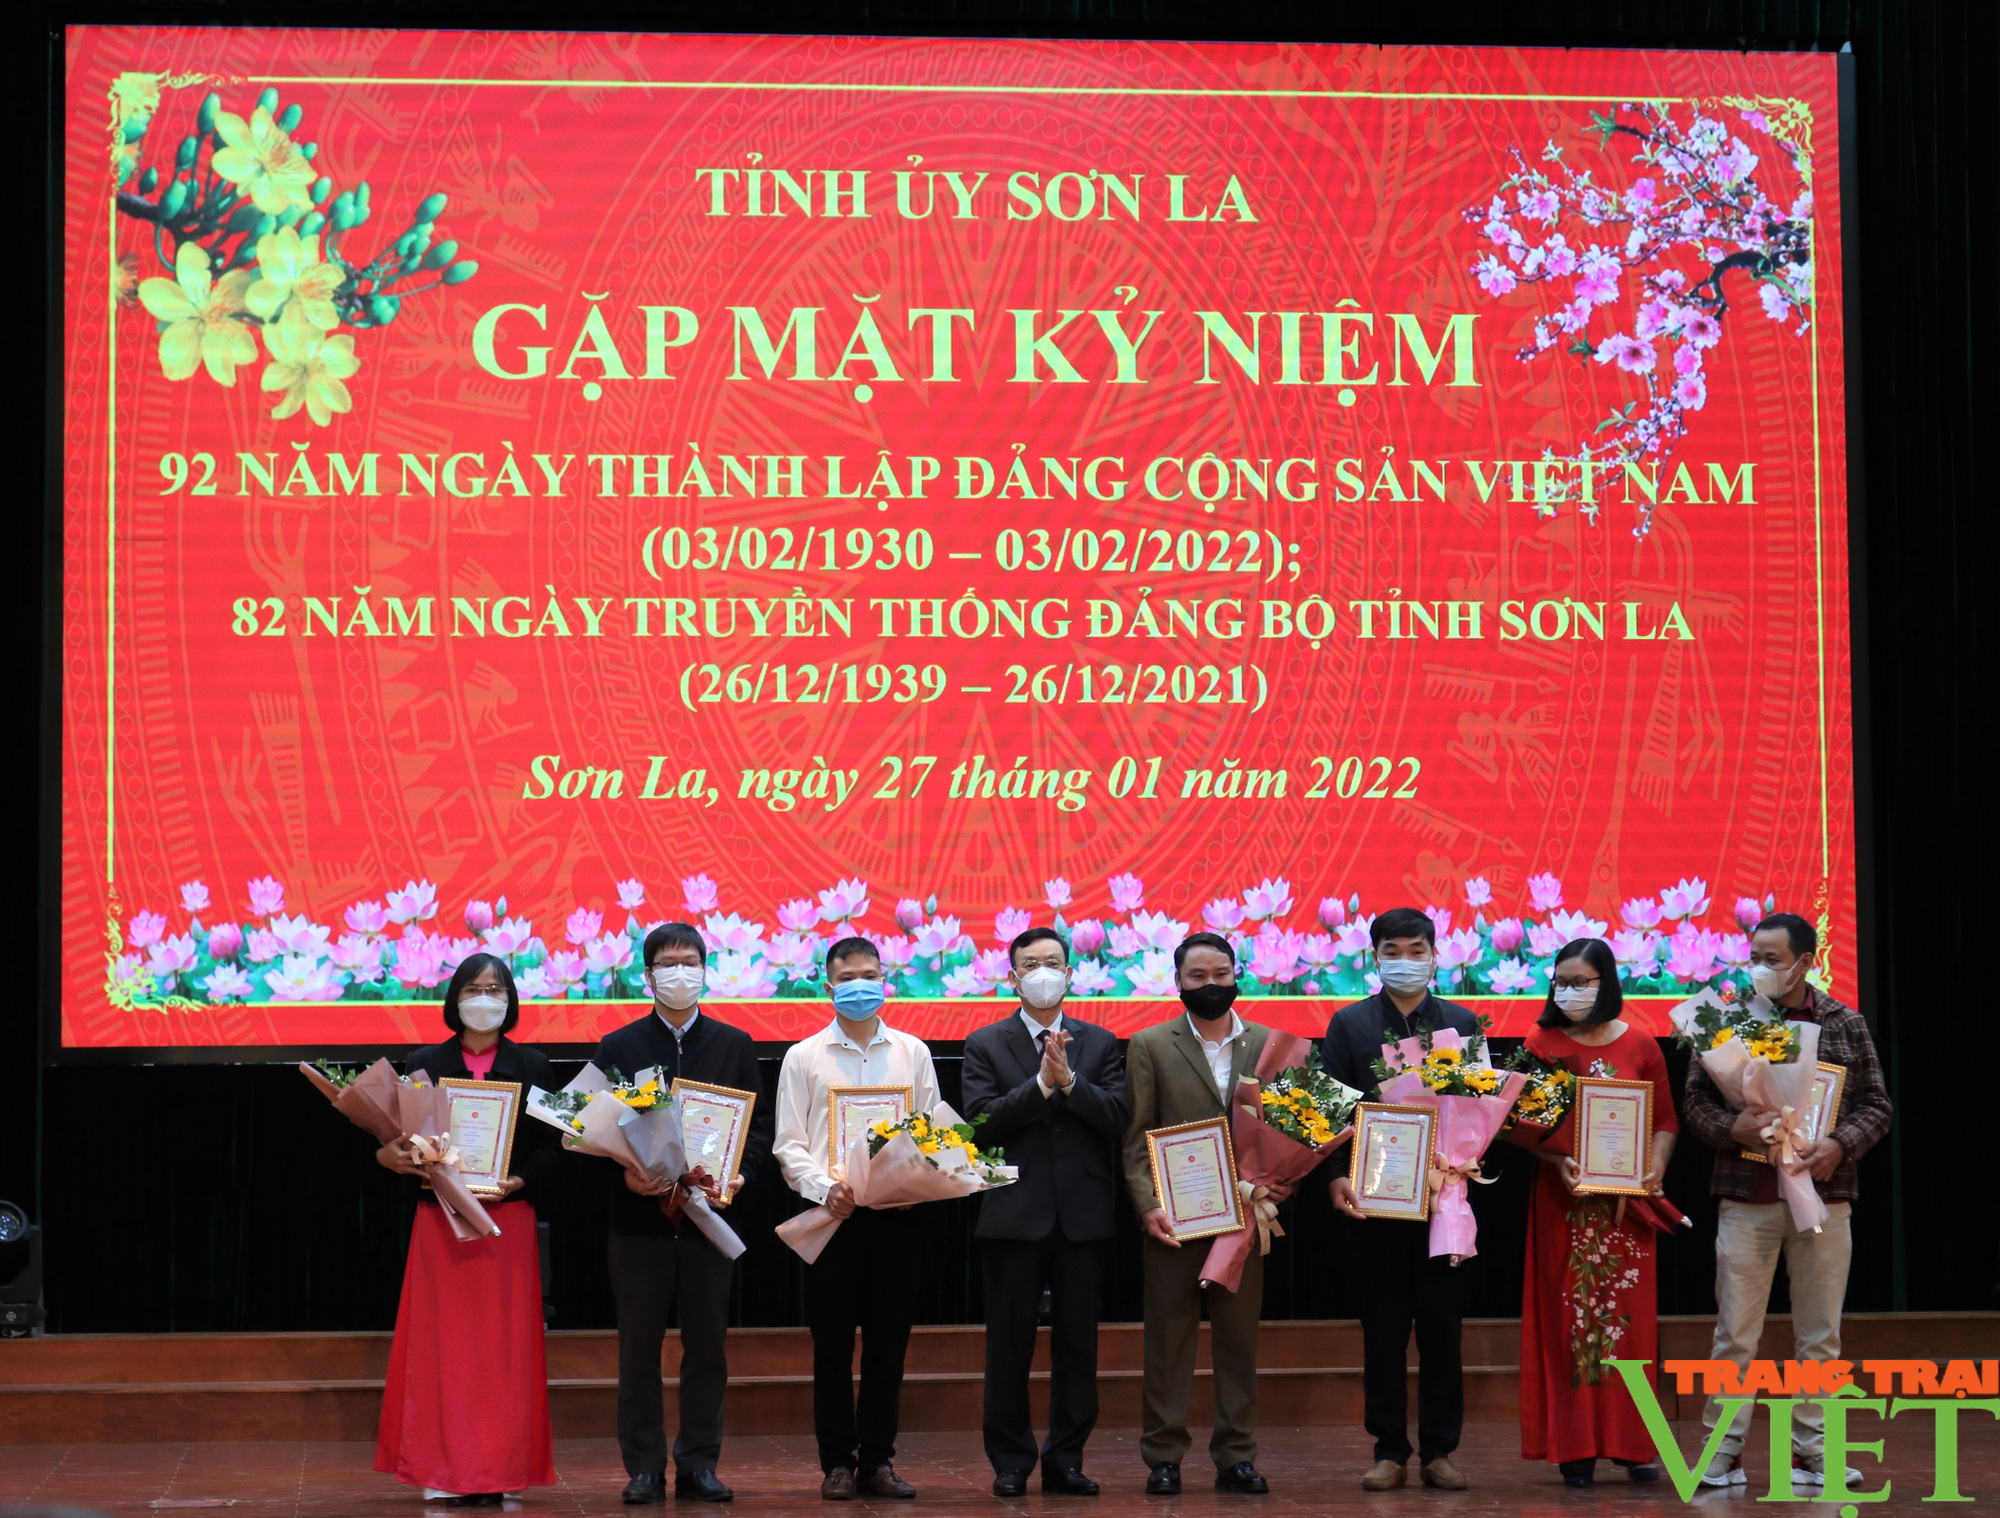 Sơn La: Gặp mặt kỷ niệm 92 năm thành lập Đảng Cộng sản Việt Nam và 82 năm Ngày truyền thống Đảng bộ tỉnh - Ảnh 7.